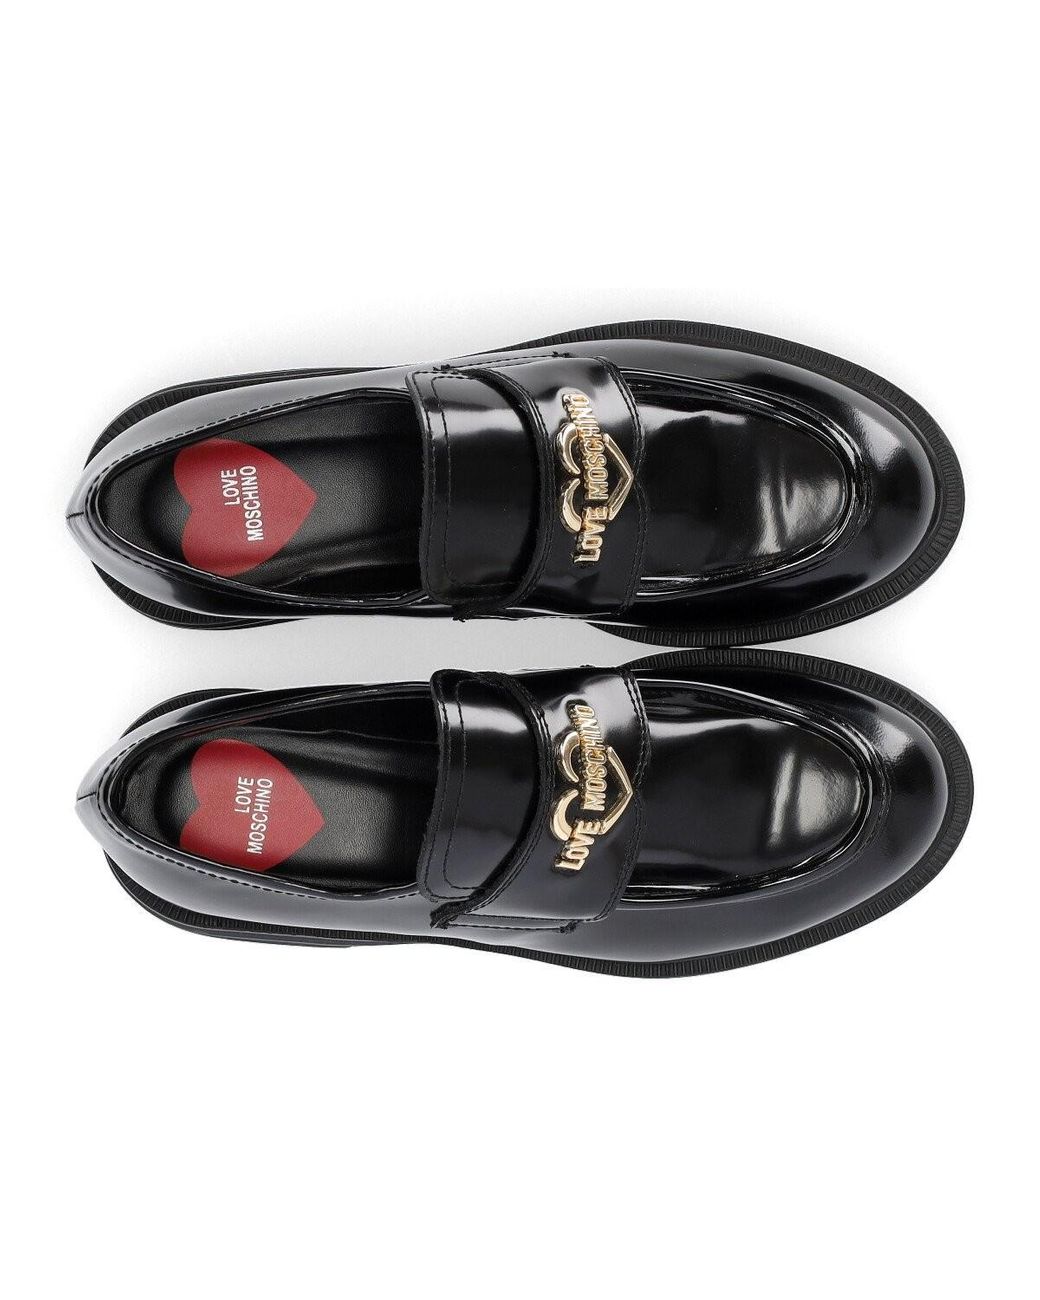 sandalias y chanclas de Mocasines Mocasines Love Moschino de Cuero de color Negro Mujer Zapatos de Zapatos planos 